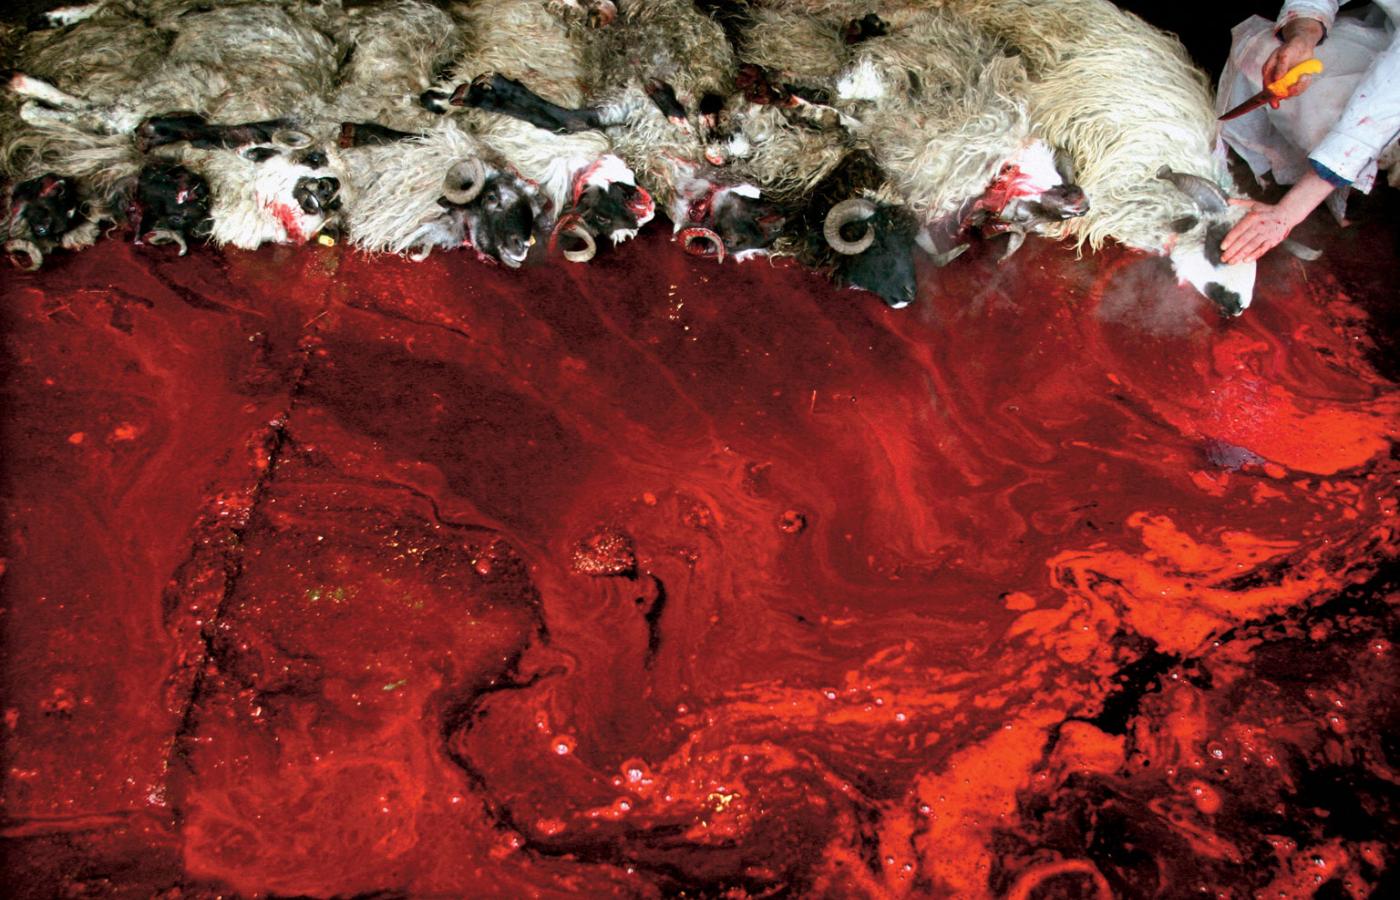 Rytualny ubój owiec w pobliżu Sarajewa w Bośni i Hercegowinie.